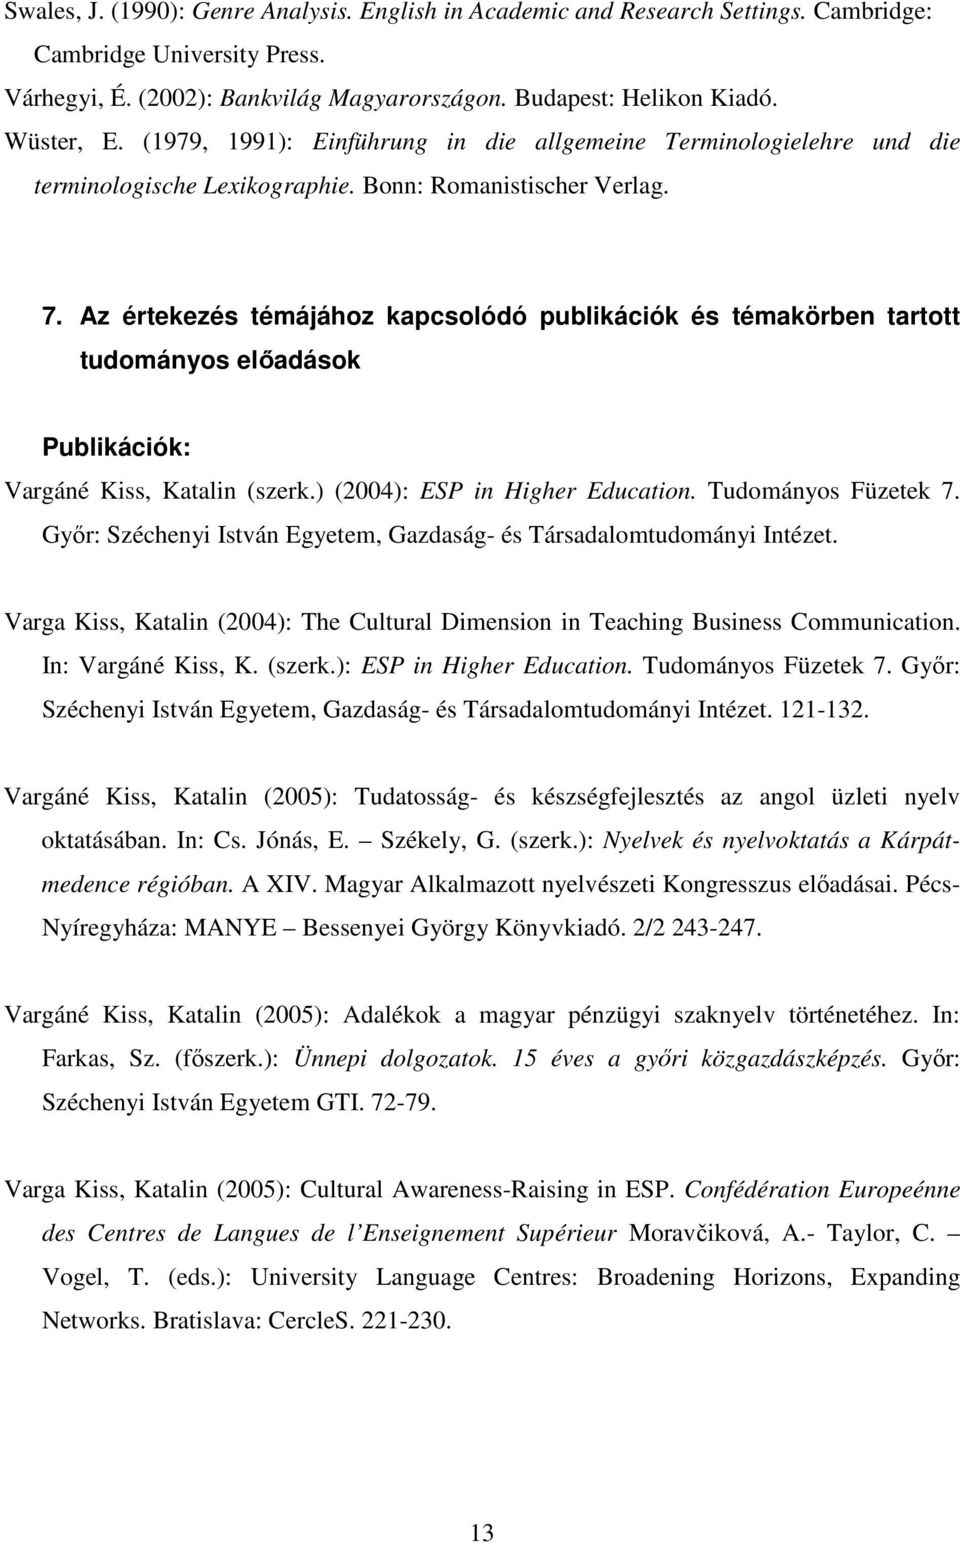 Az értekezés témájához kapcsolódó publikációk és témakörben tartott tudományos elıadások Publikációk: Vargáné Kiss, Katalin (szerk.) (2004): ESP in Higher Education. Tudományos Füzetek 7.